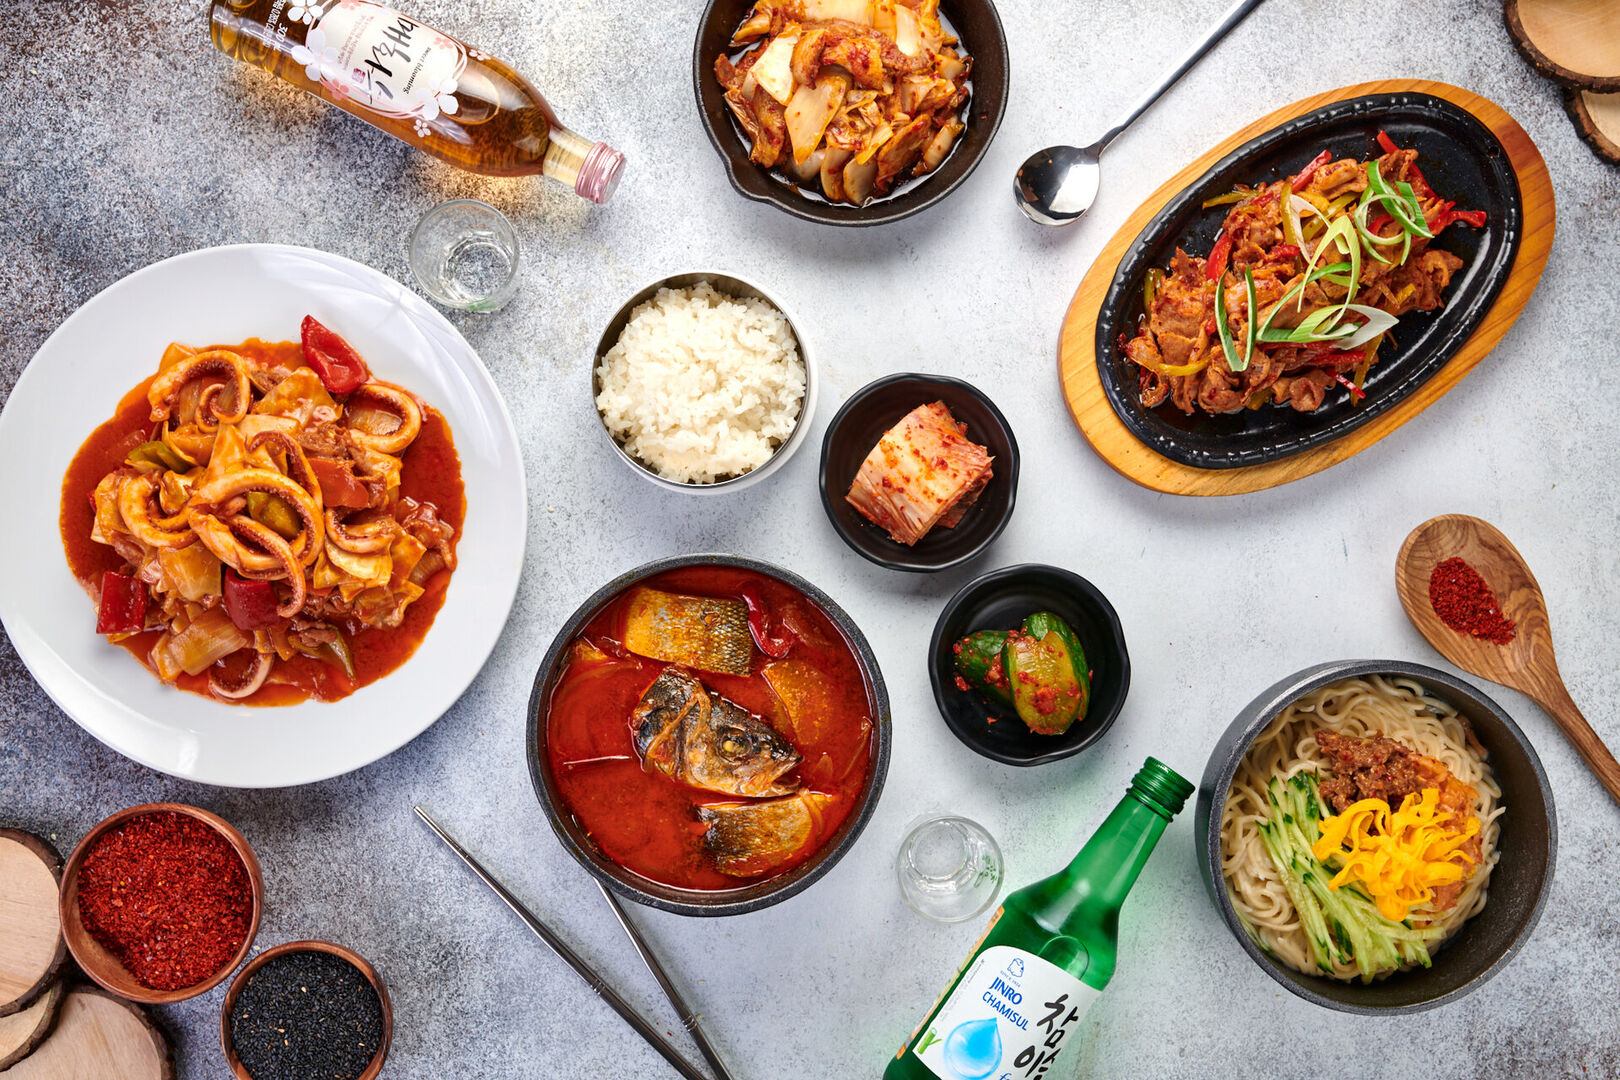 Asia цены. Ресторан корейской кухни. Азиатская кухня. Корейская еда в ресторане. Азиатская кухня блюда.